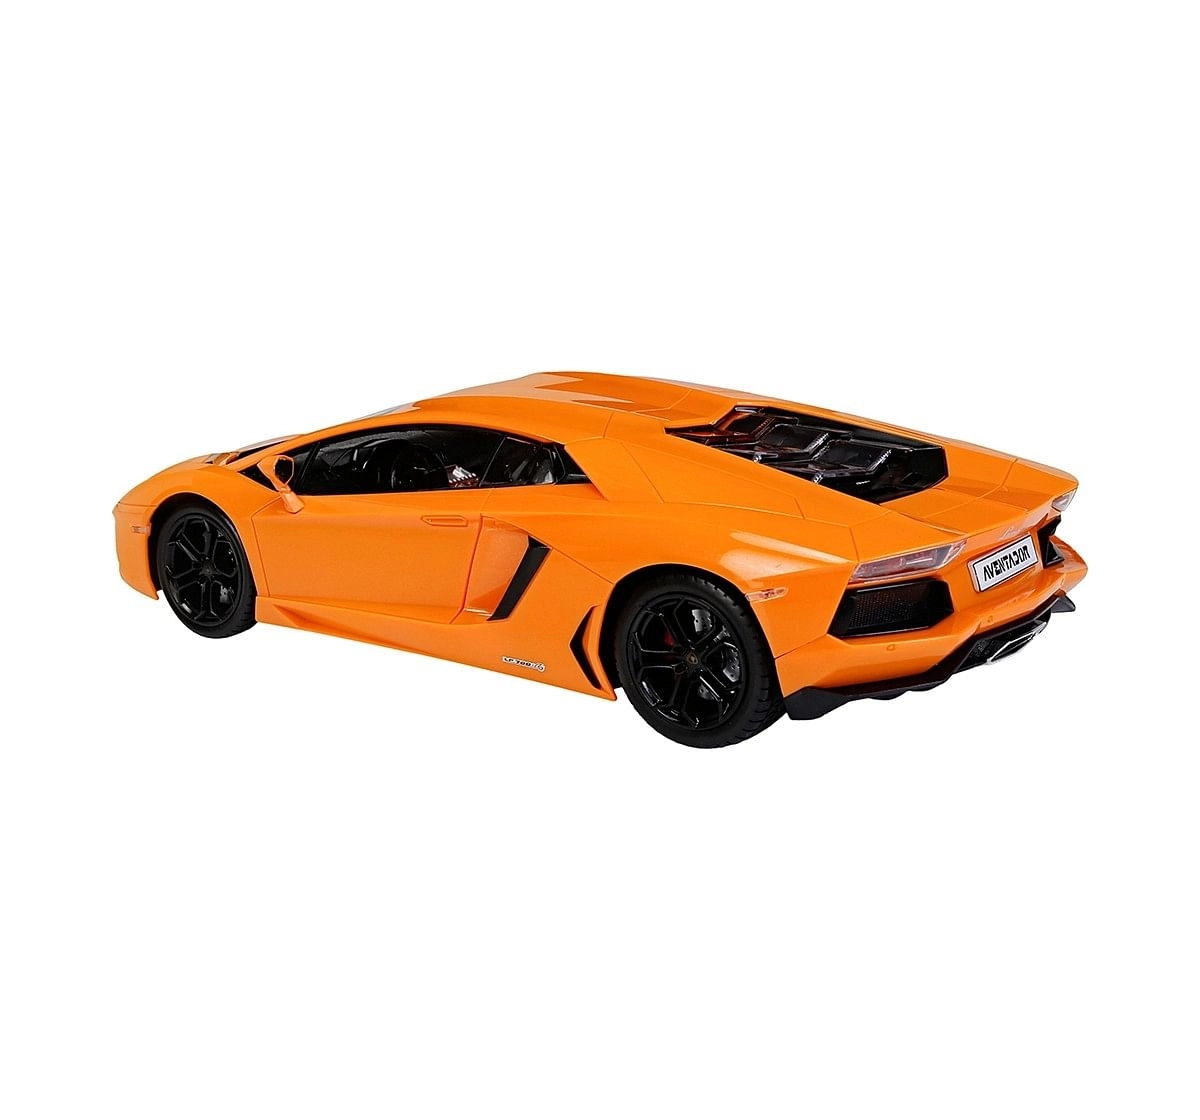 RW 1:14 Lamborghini Aventador LP 700-4 Remote Control Car Remote Control Toys for Kids age 6Y+ (Green)